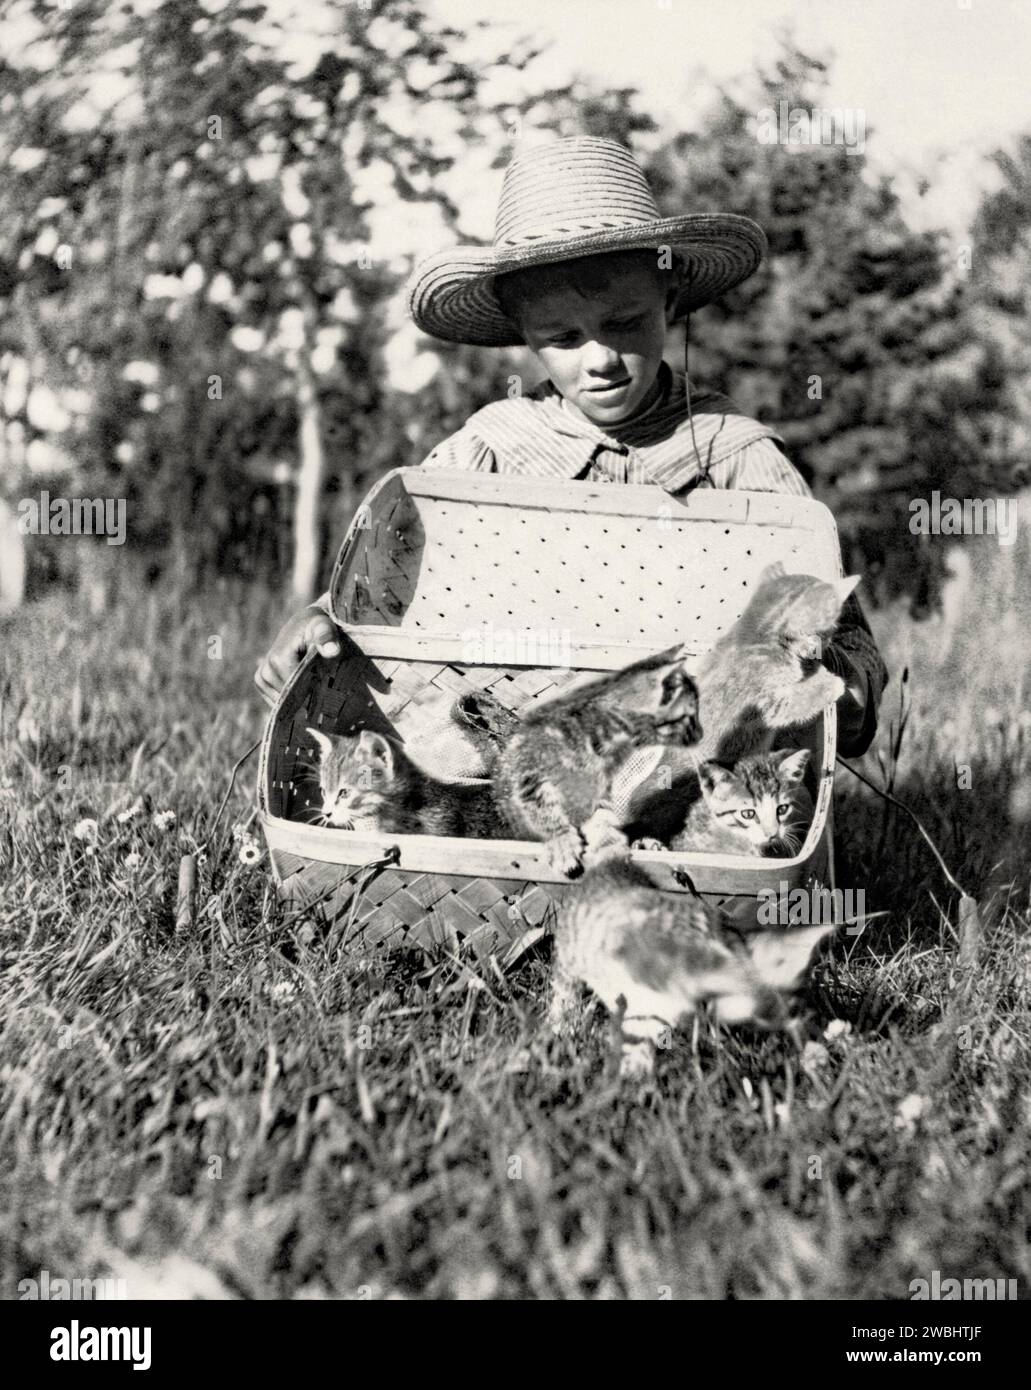 Une vieille photographie d'un garçon avec un panier de chatons au soleil à Maple Grove Farm, Rosser, Manitoba, Canada, au début du 20e siècle. Les cinq chatons quittent le panier de transport pour avoir un goût de liberté. Le garçon porte un chapeau de paille. Ceci est tiré d'un album de photos de début. Banque D'Images